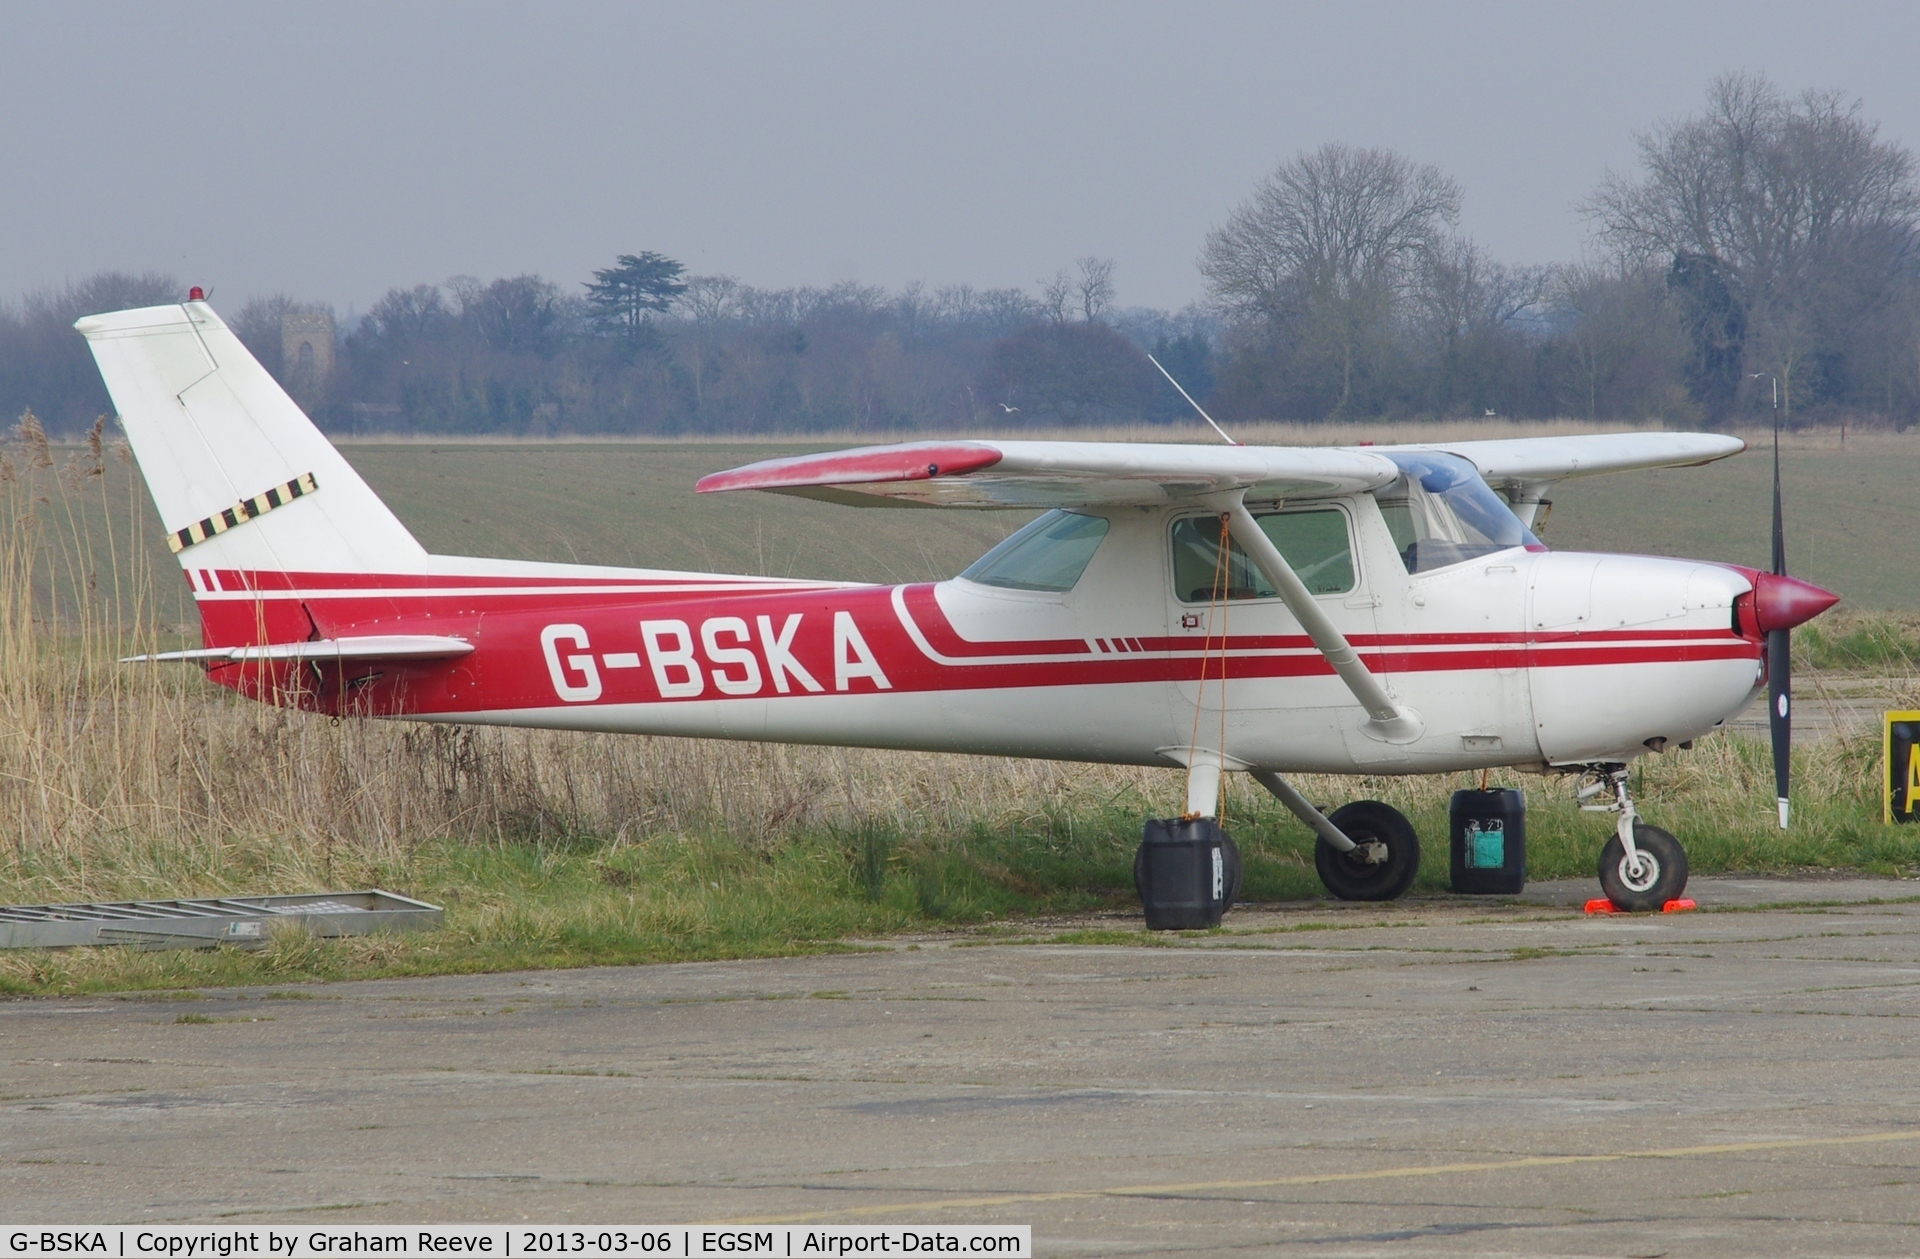 G-BSKA, 1974 Cessna 150M C/N 150-76137, Parked at Beccles.